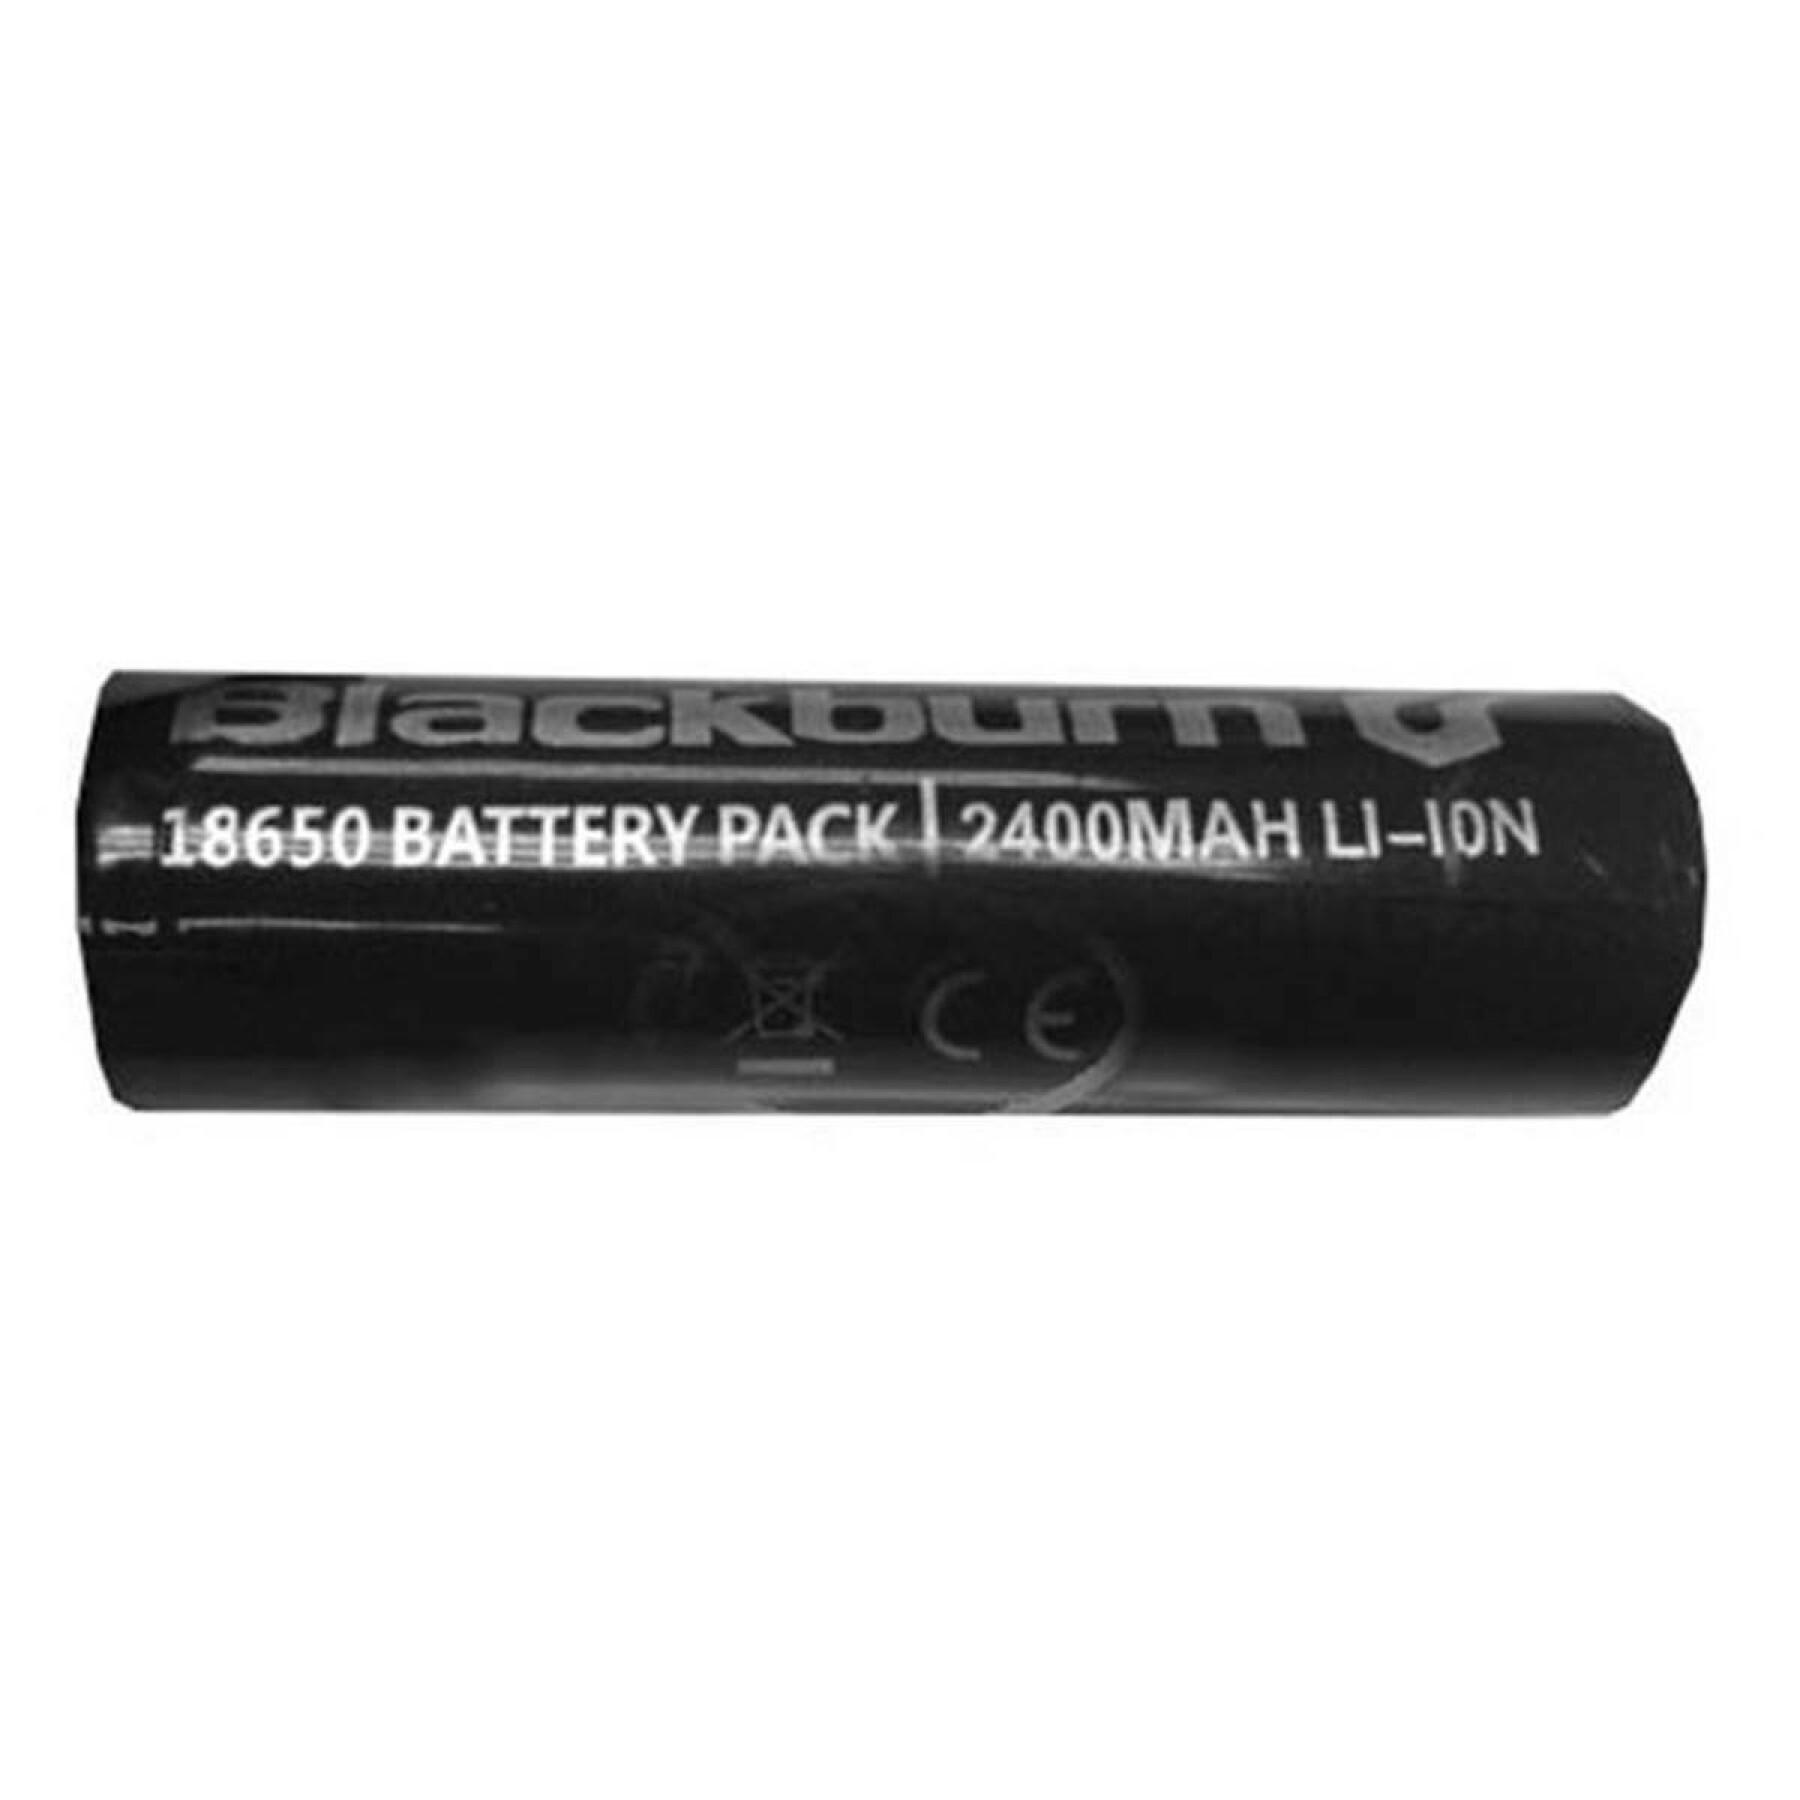 Battery lighting Blackburn Central 300/700